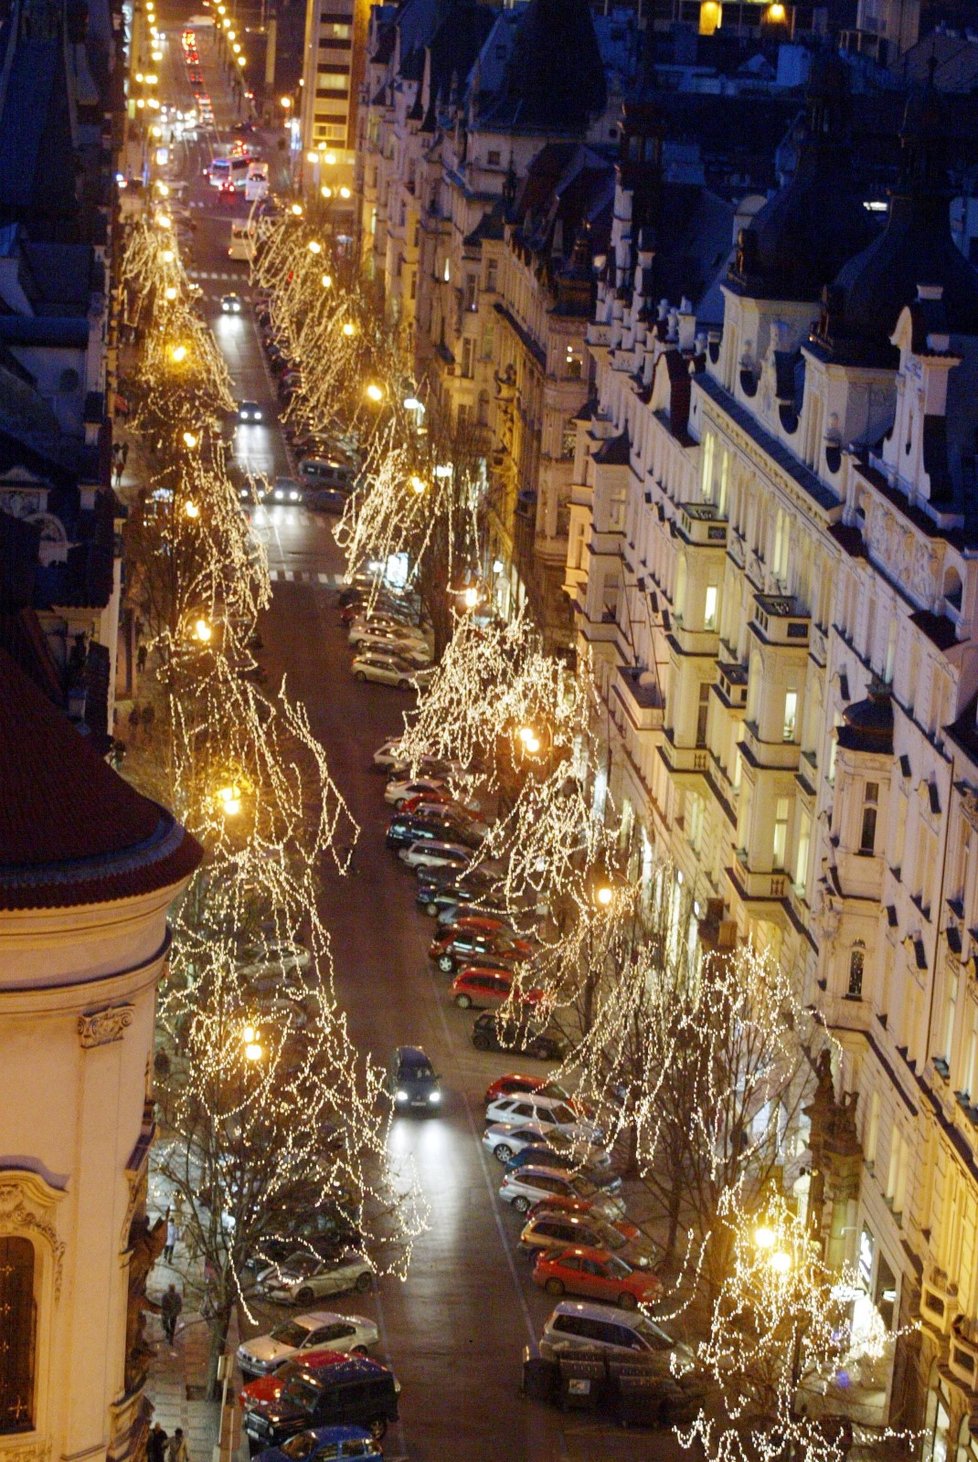 Pařížská ulice se stala poprvé nejdražší pražskou ulicí